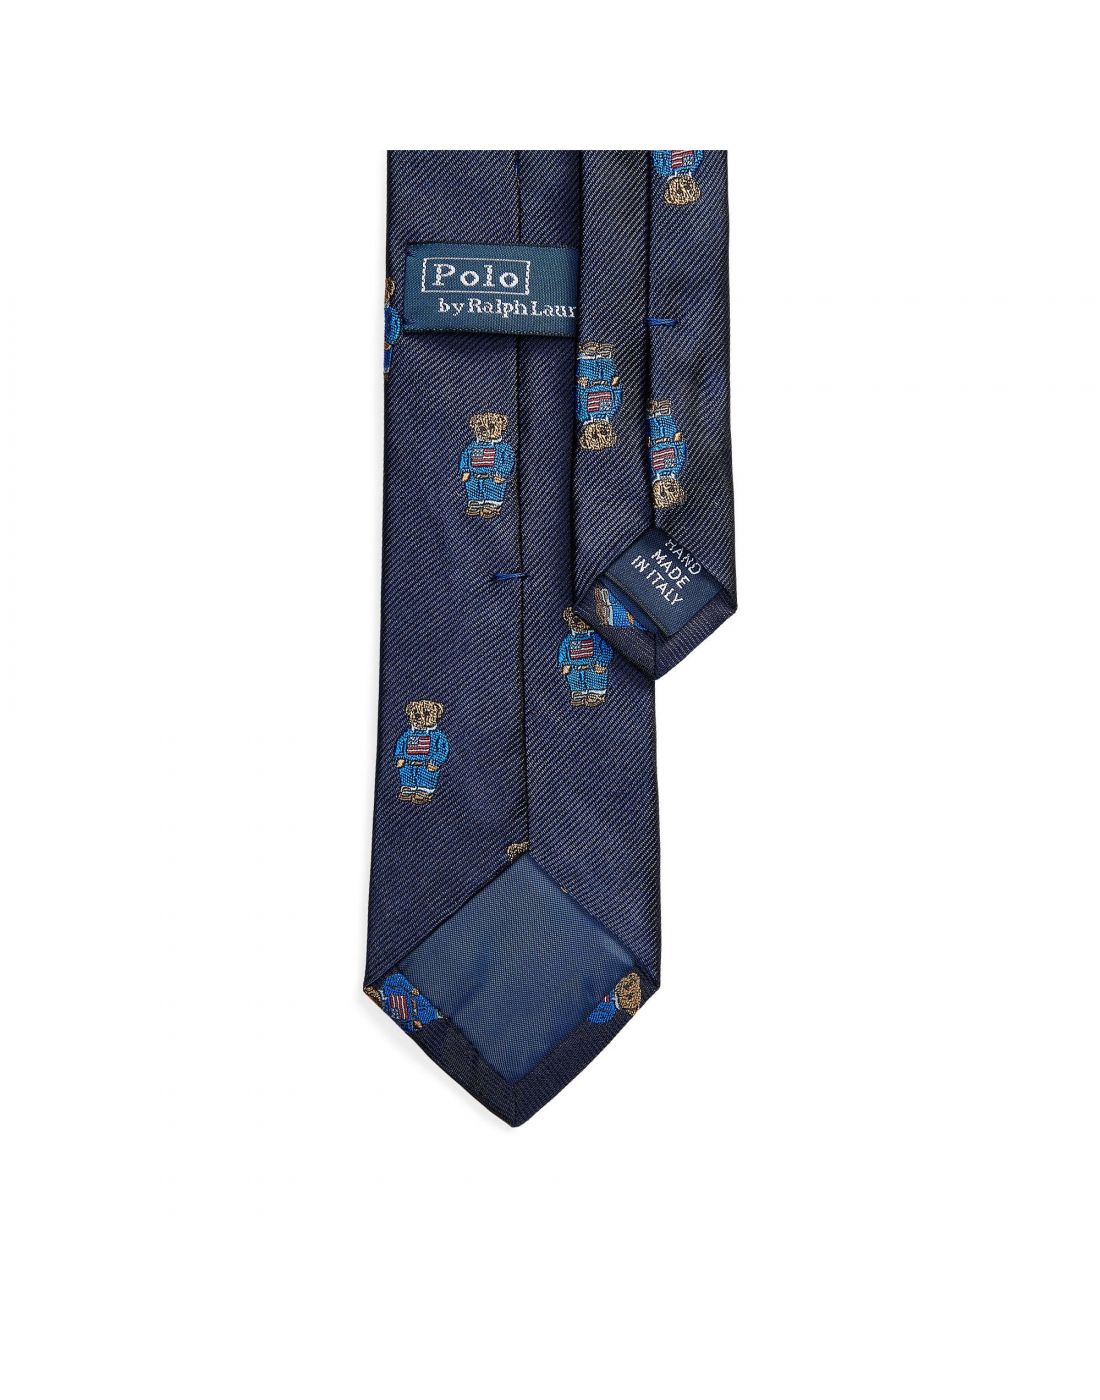 Παιδική Γραβάτα Polo Ralph Lauren, Polo Ralph Lauren, 23265032 |  LapinKids.com | LAPIN KIDS